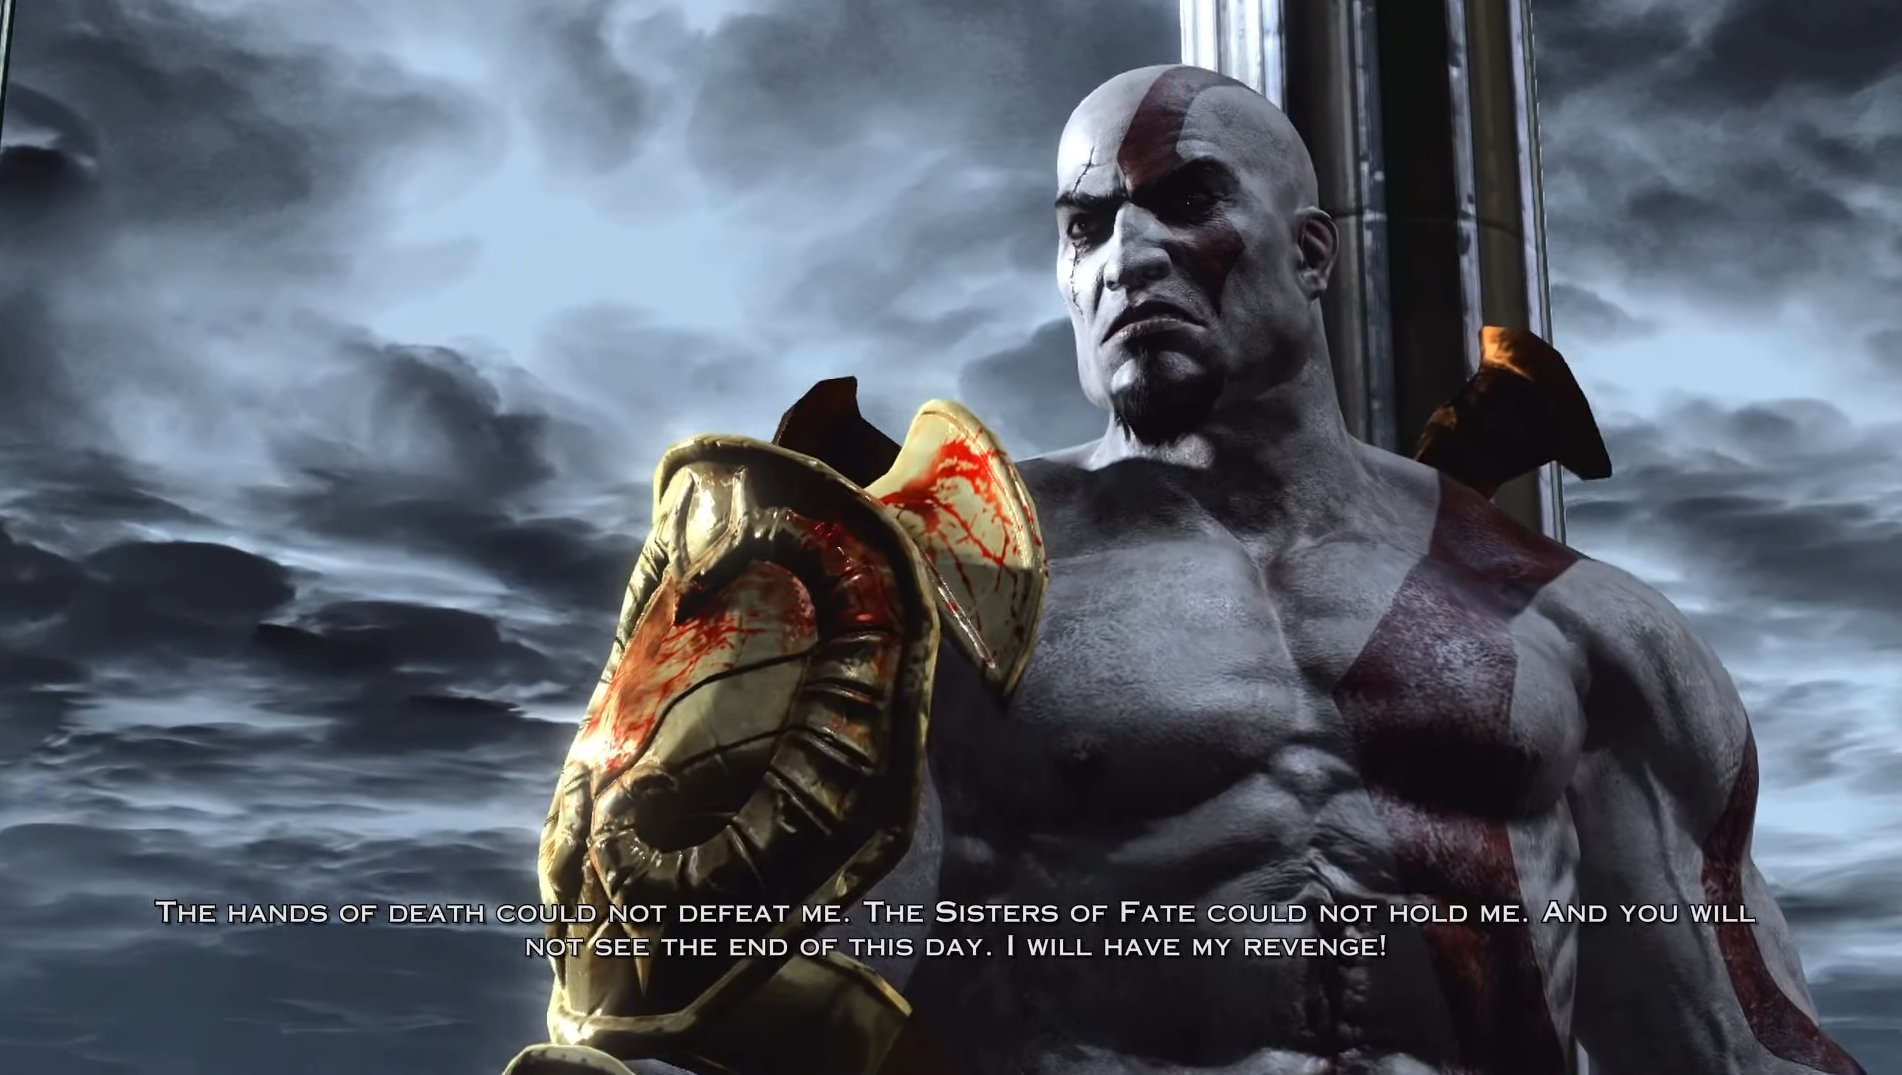 High Quality Kratos Speech Blank Meme Template